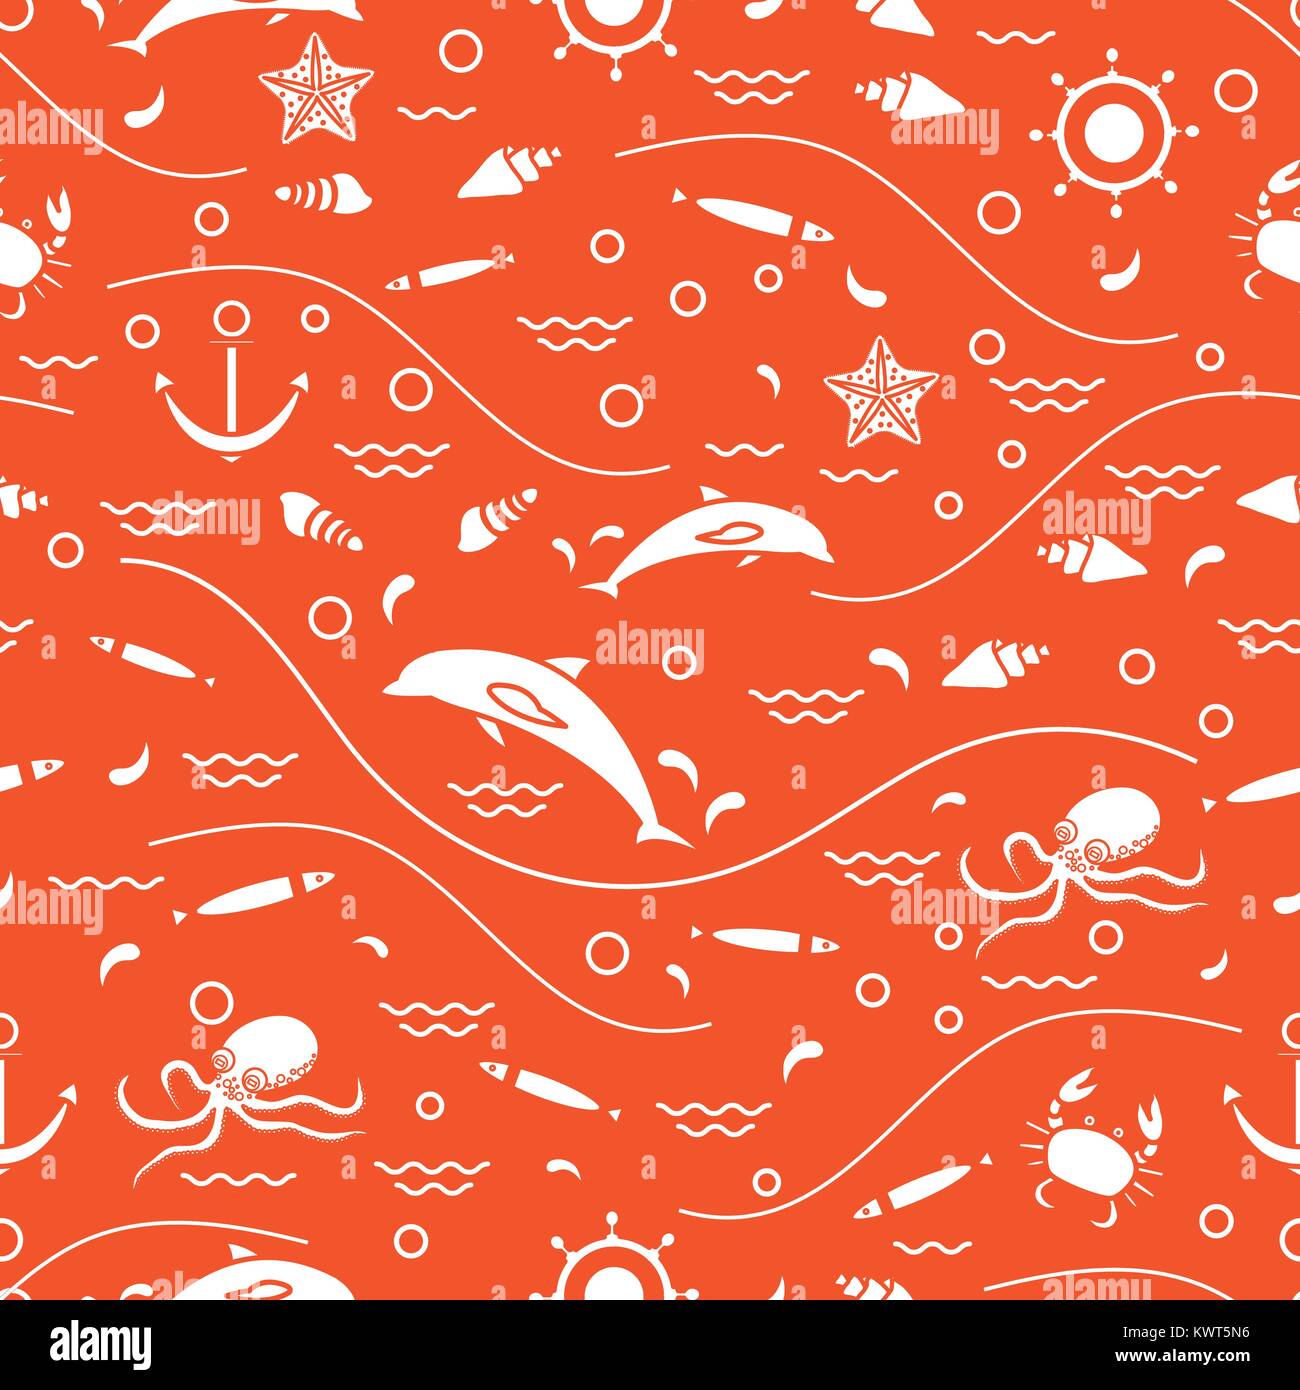 Carino seamless pattern con i delfini, polpi, pesce, ancoraggio, timone, onde, conchiglie, stelle marine, granchio. Design per banner, poster o di stampa. Illustrazione Vettoriale